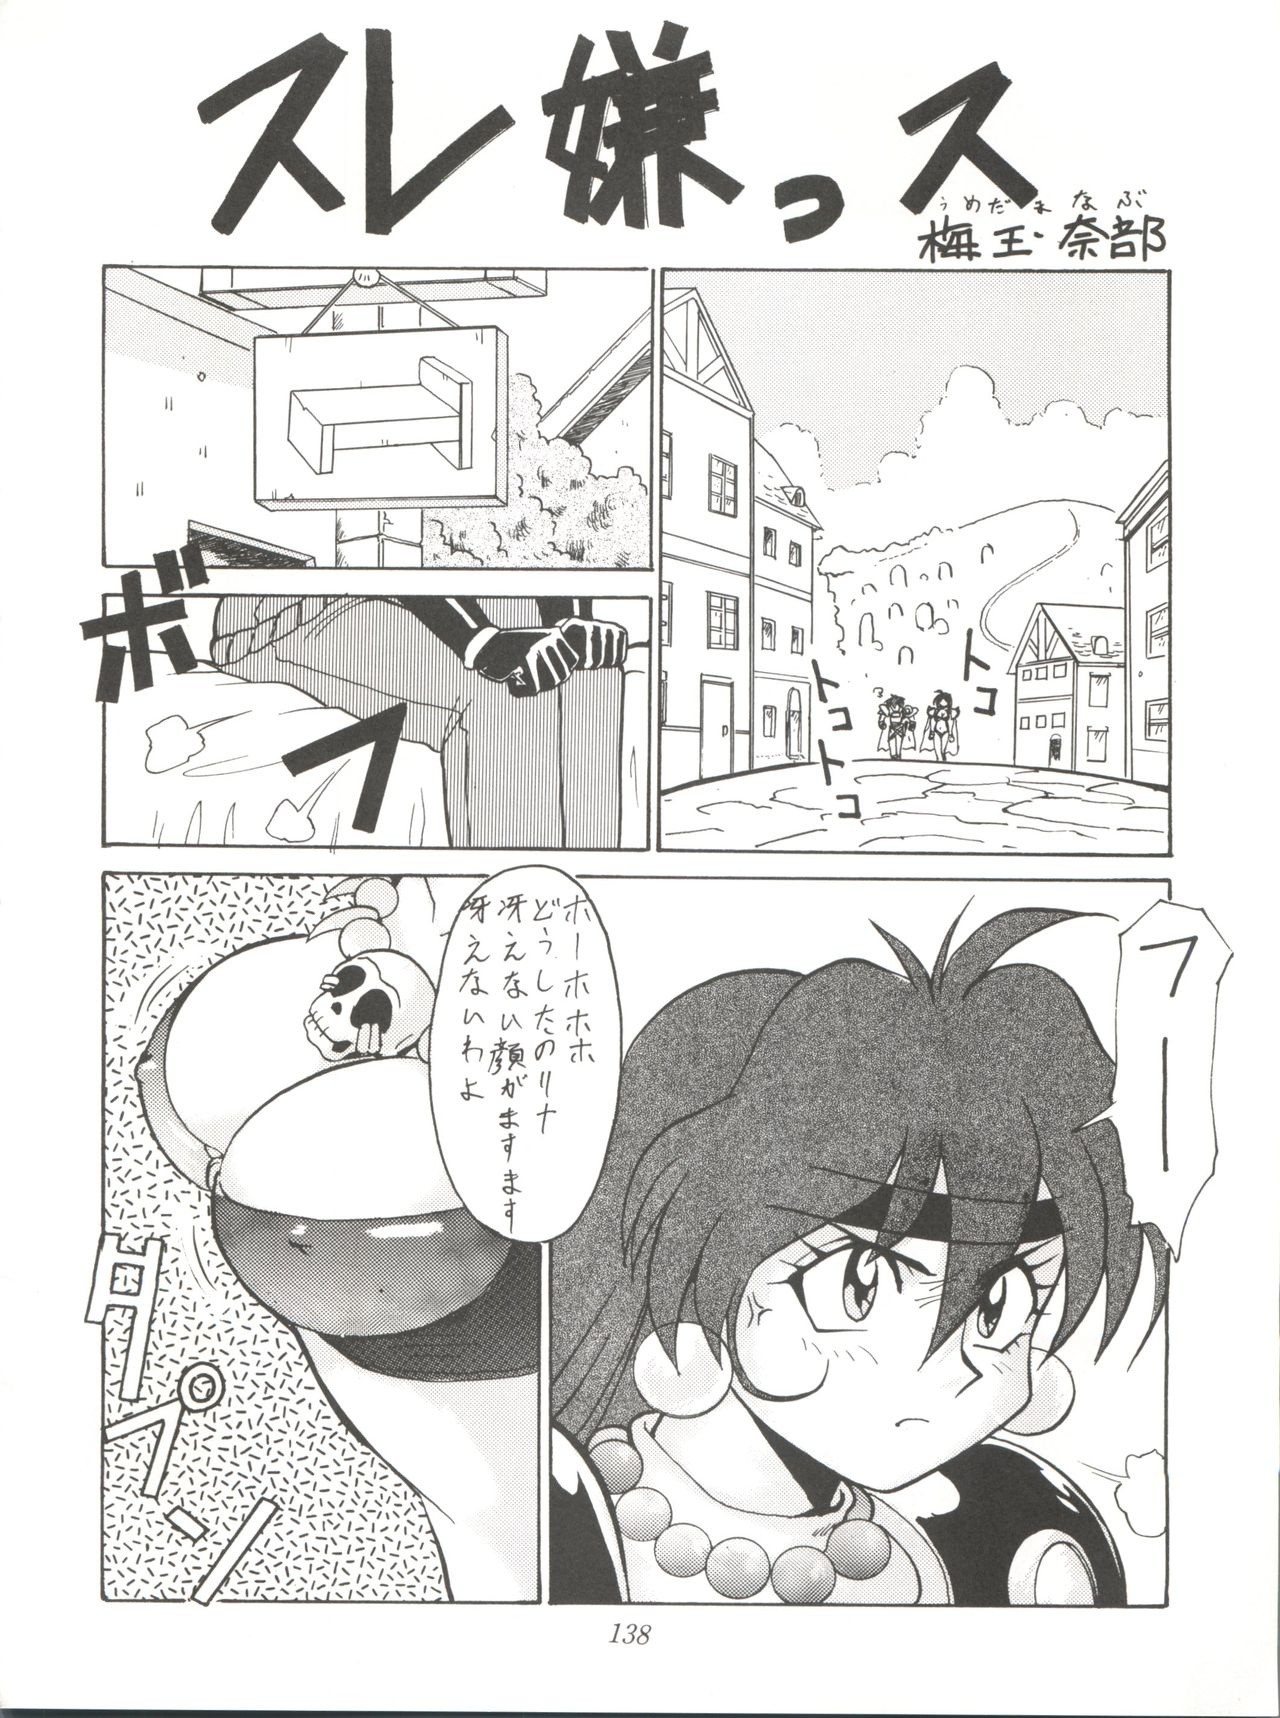 Yuuki and Yume and Mukubo's Japanese hentai manga picture 91